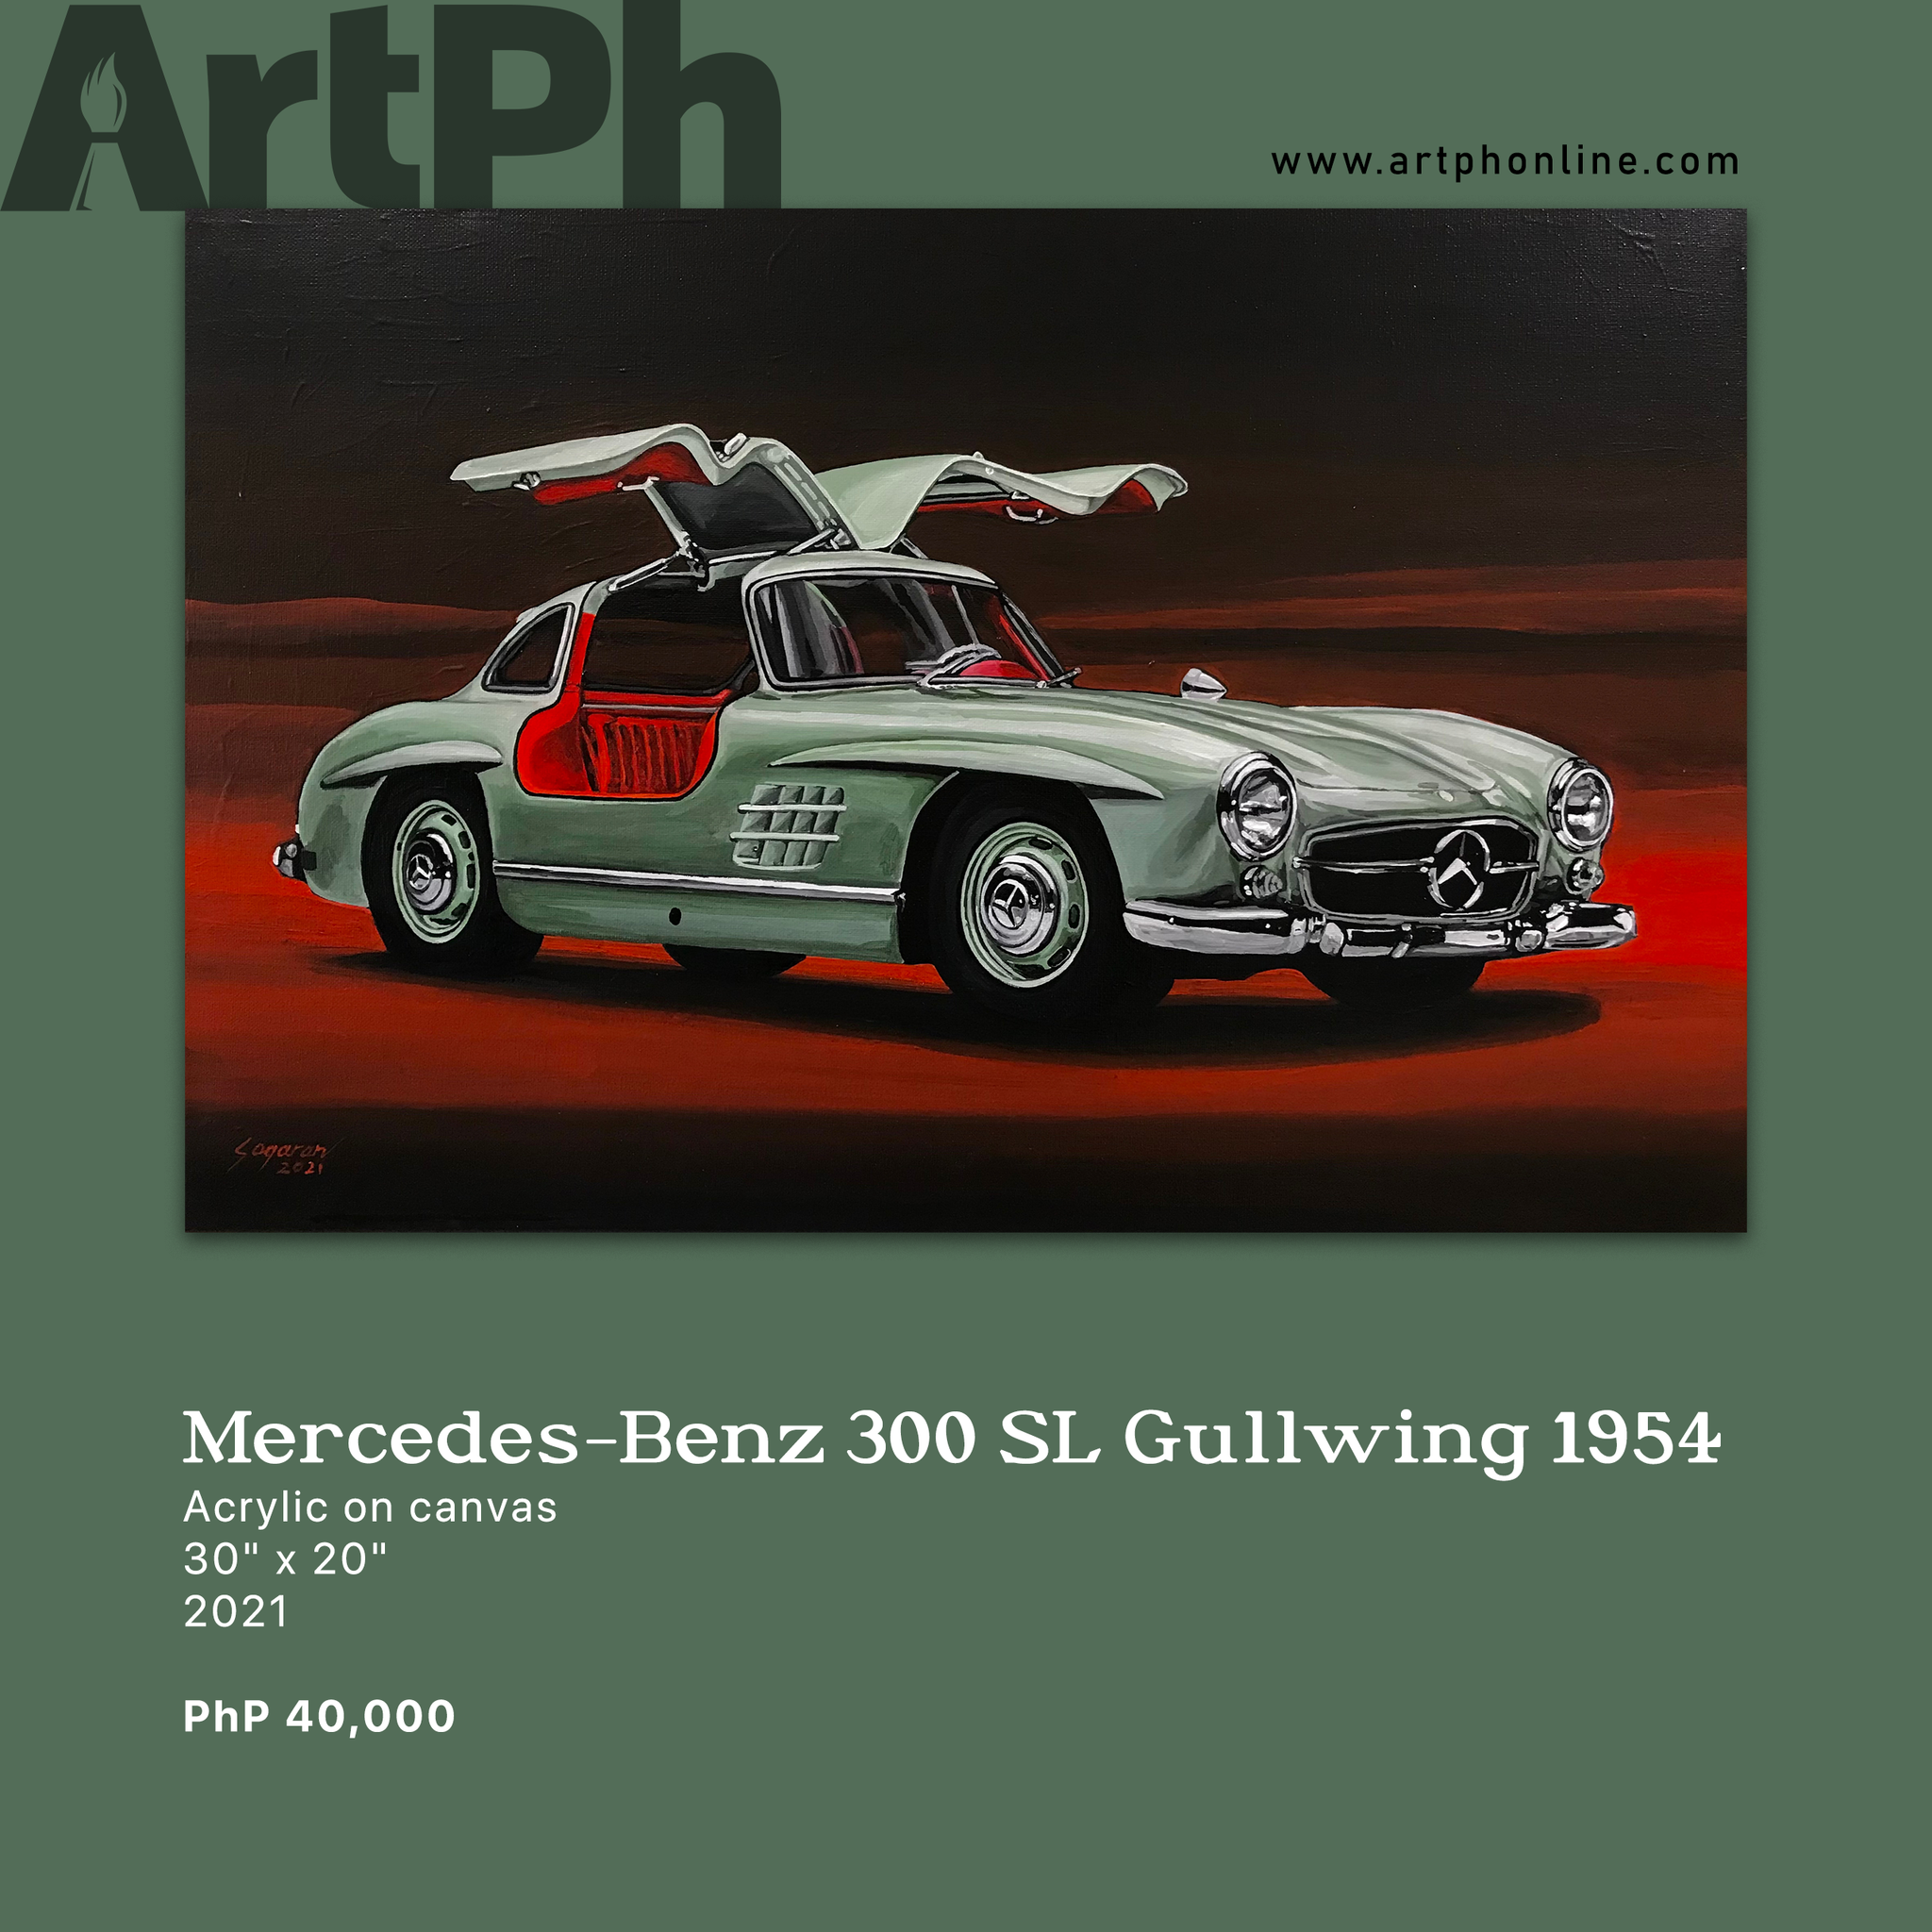 Mercedes-Benz 300 SL Gullwing 1954